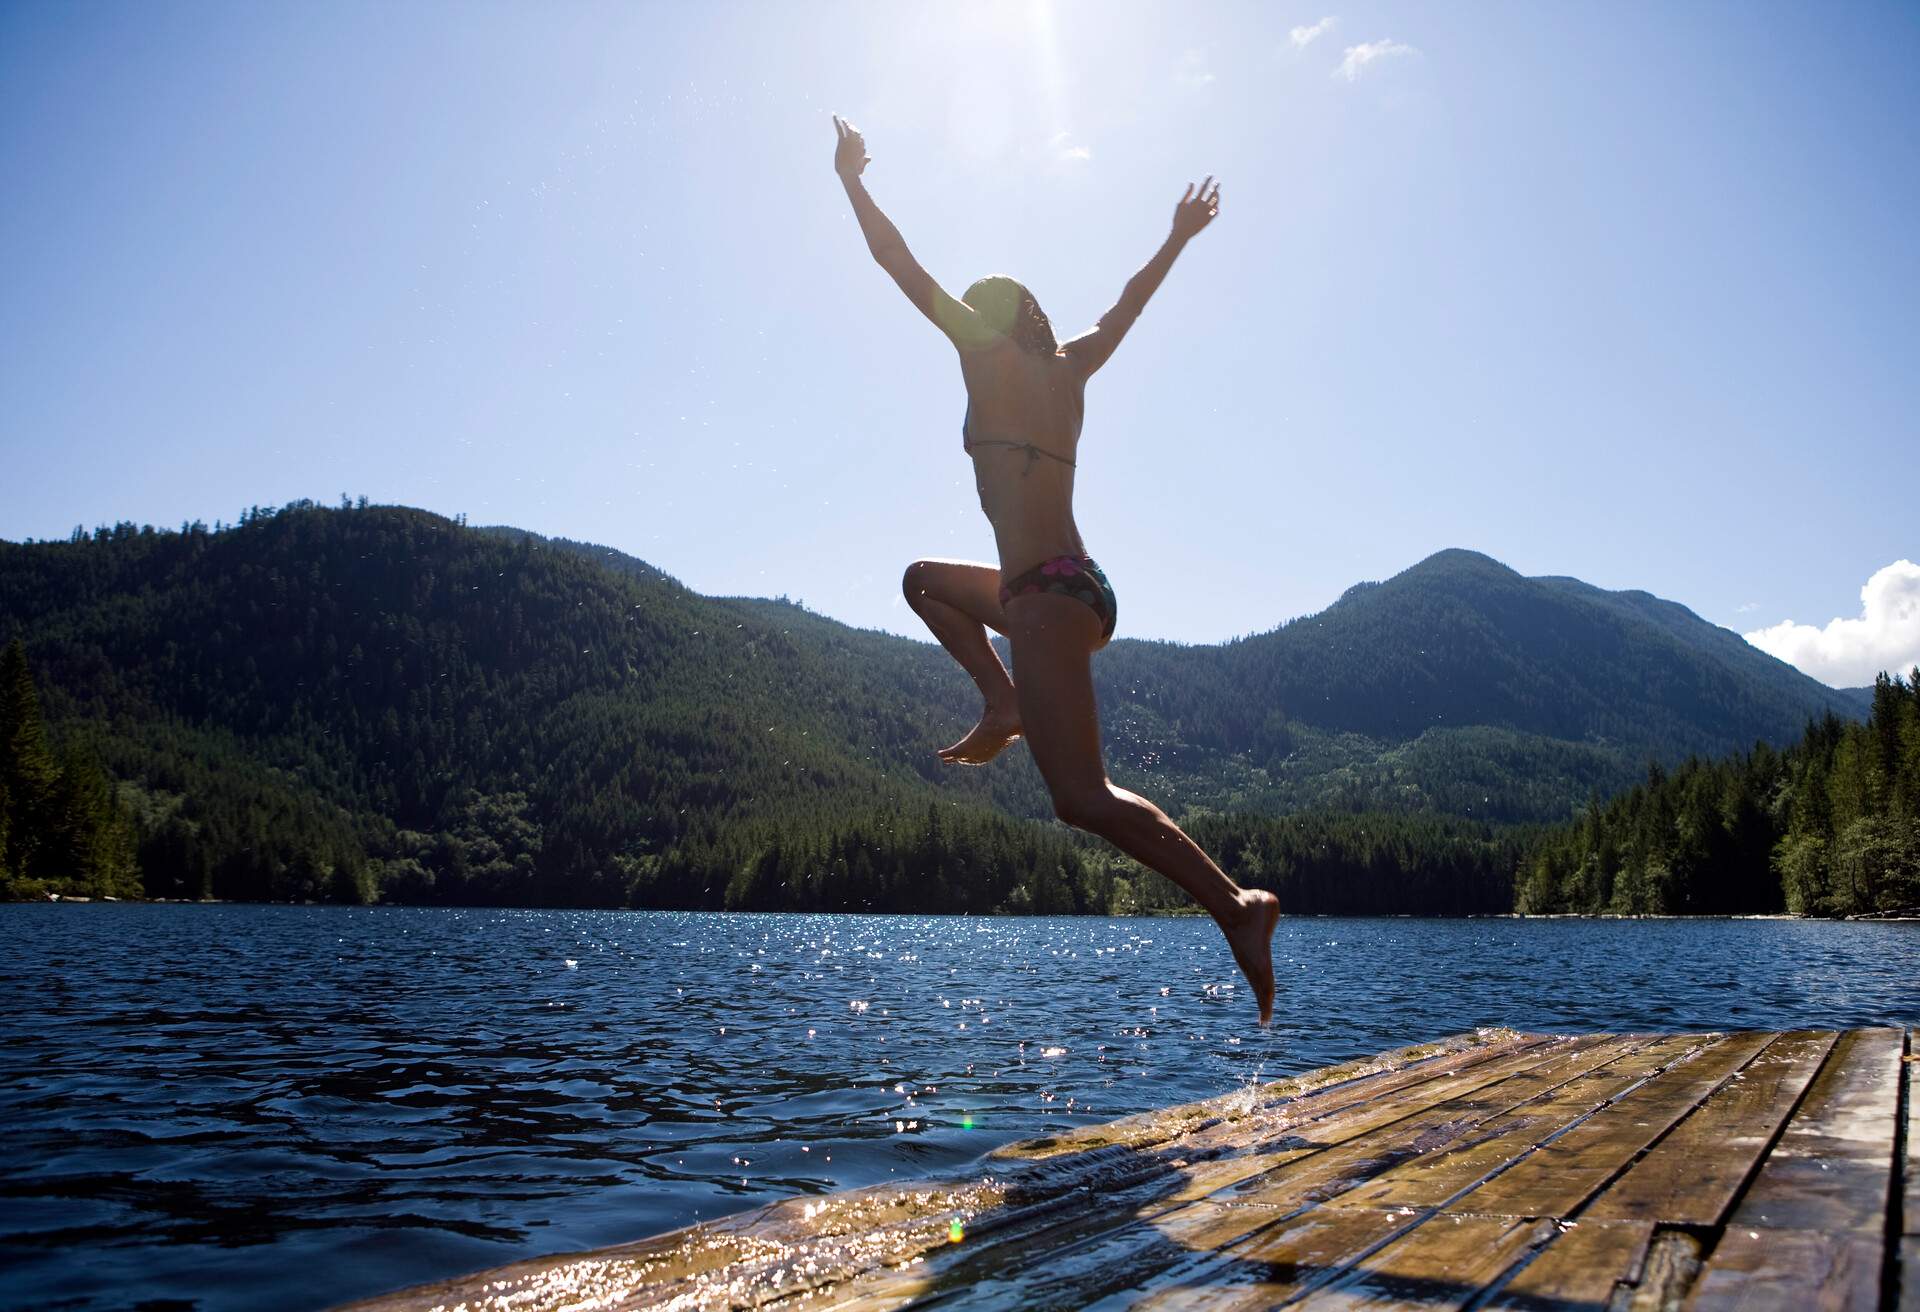 Dock Jumping at Klein Lake, British Columbia.